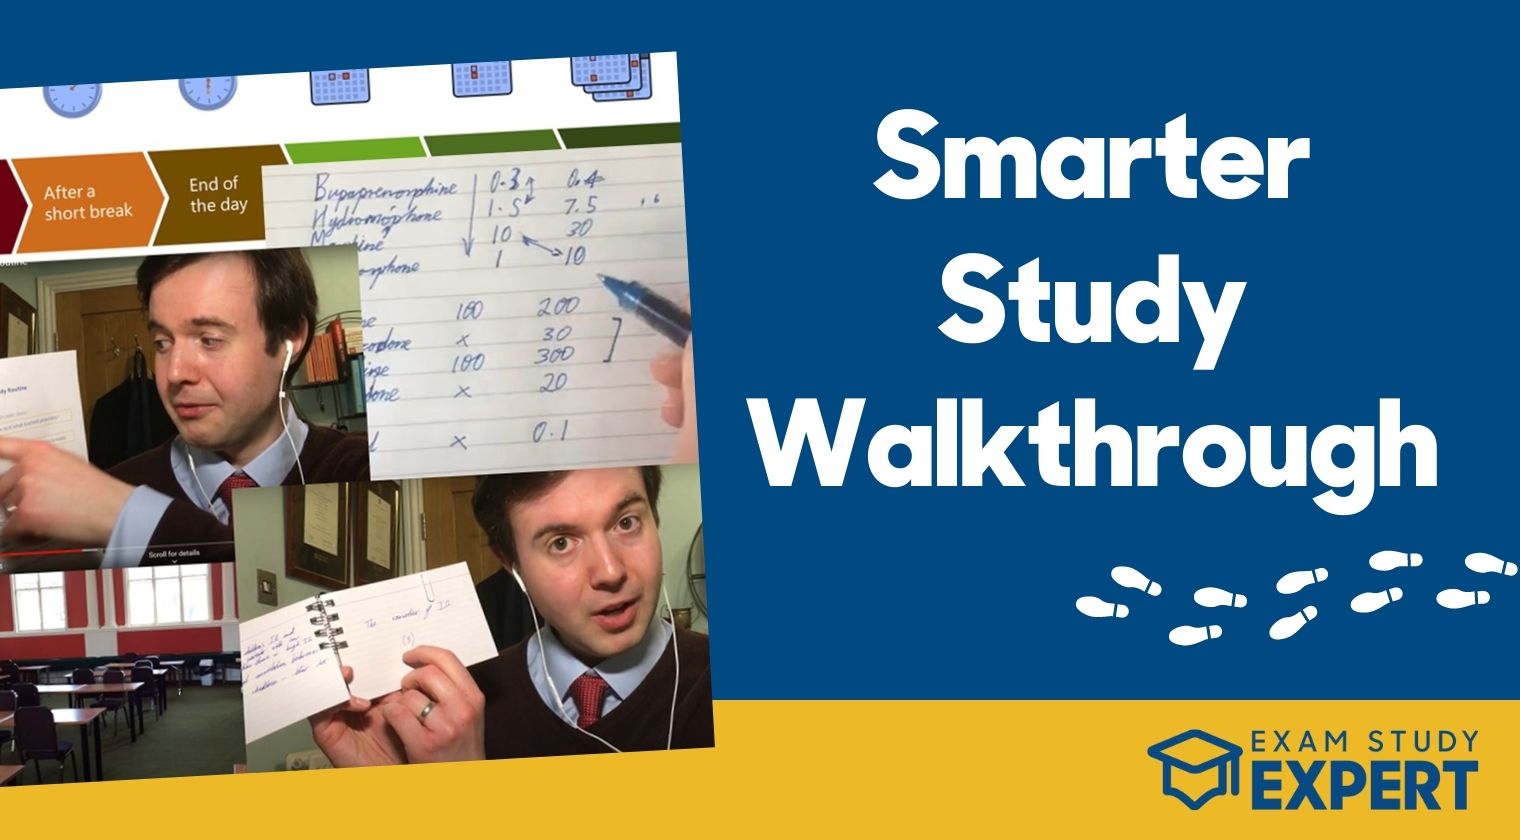 Thumbnail for the Smarter Study Walkthrough course